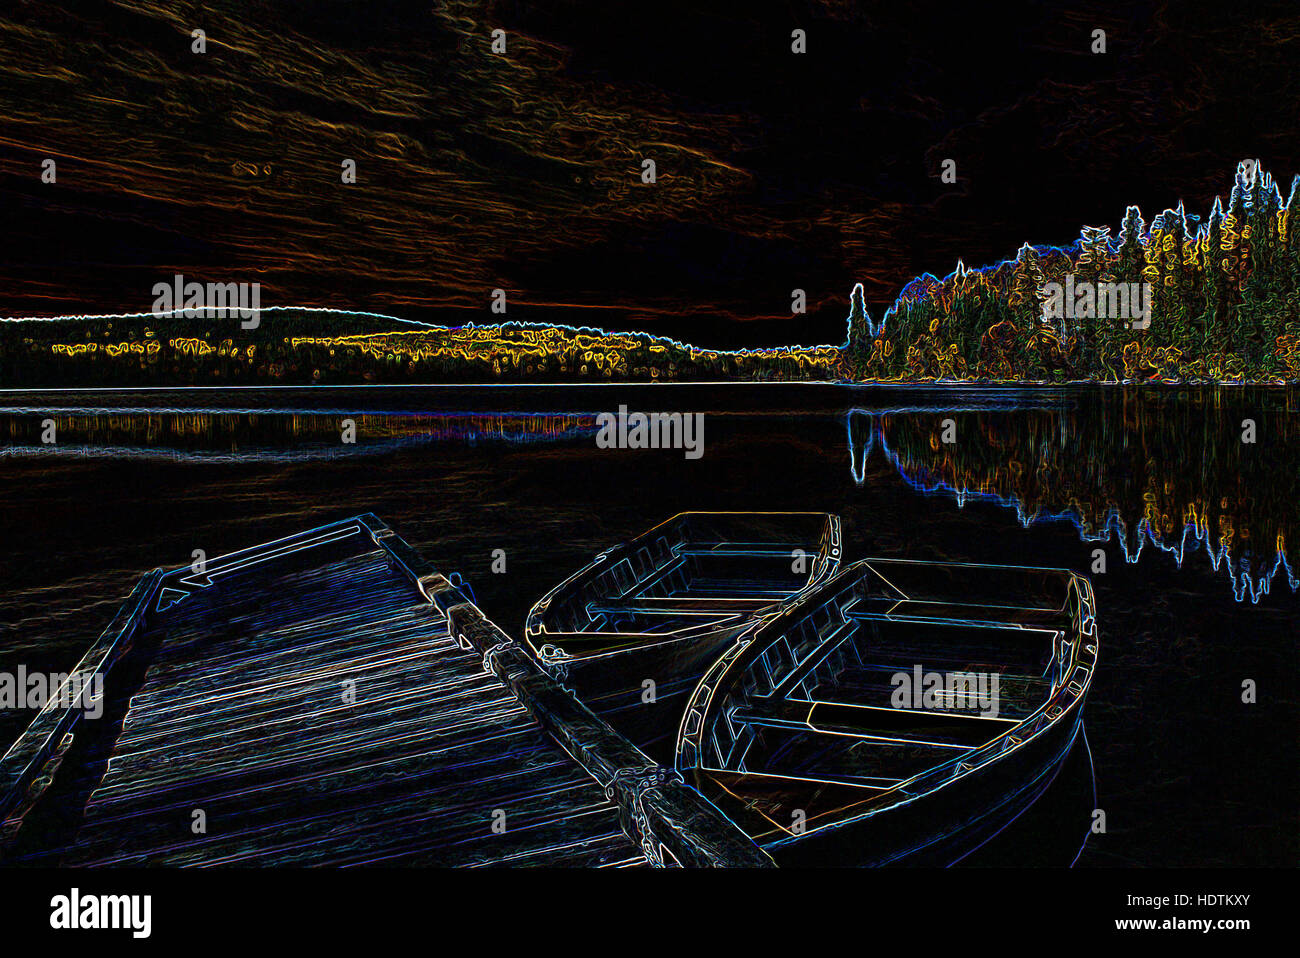 Chaloupes liée à quai à Lake - image manipulée numériquement avec bords rougeoyants, Résumé / bateau bateaux sur un fond noir Banque D'Images